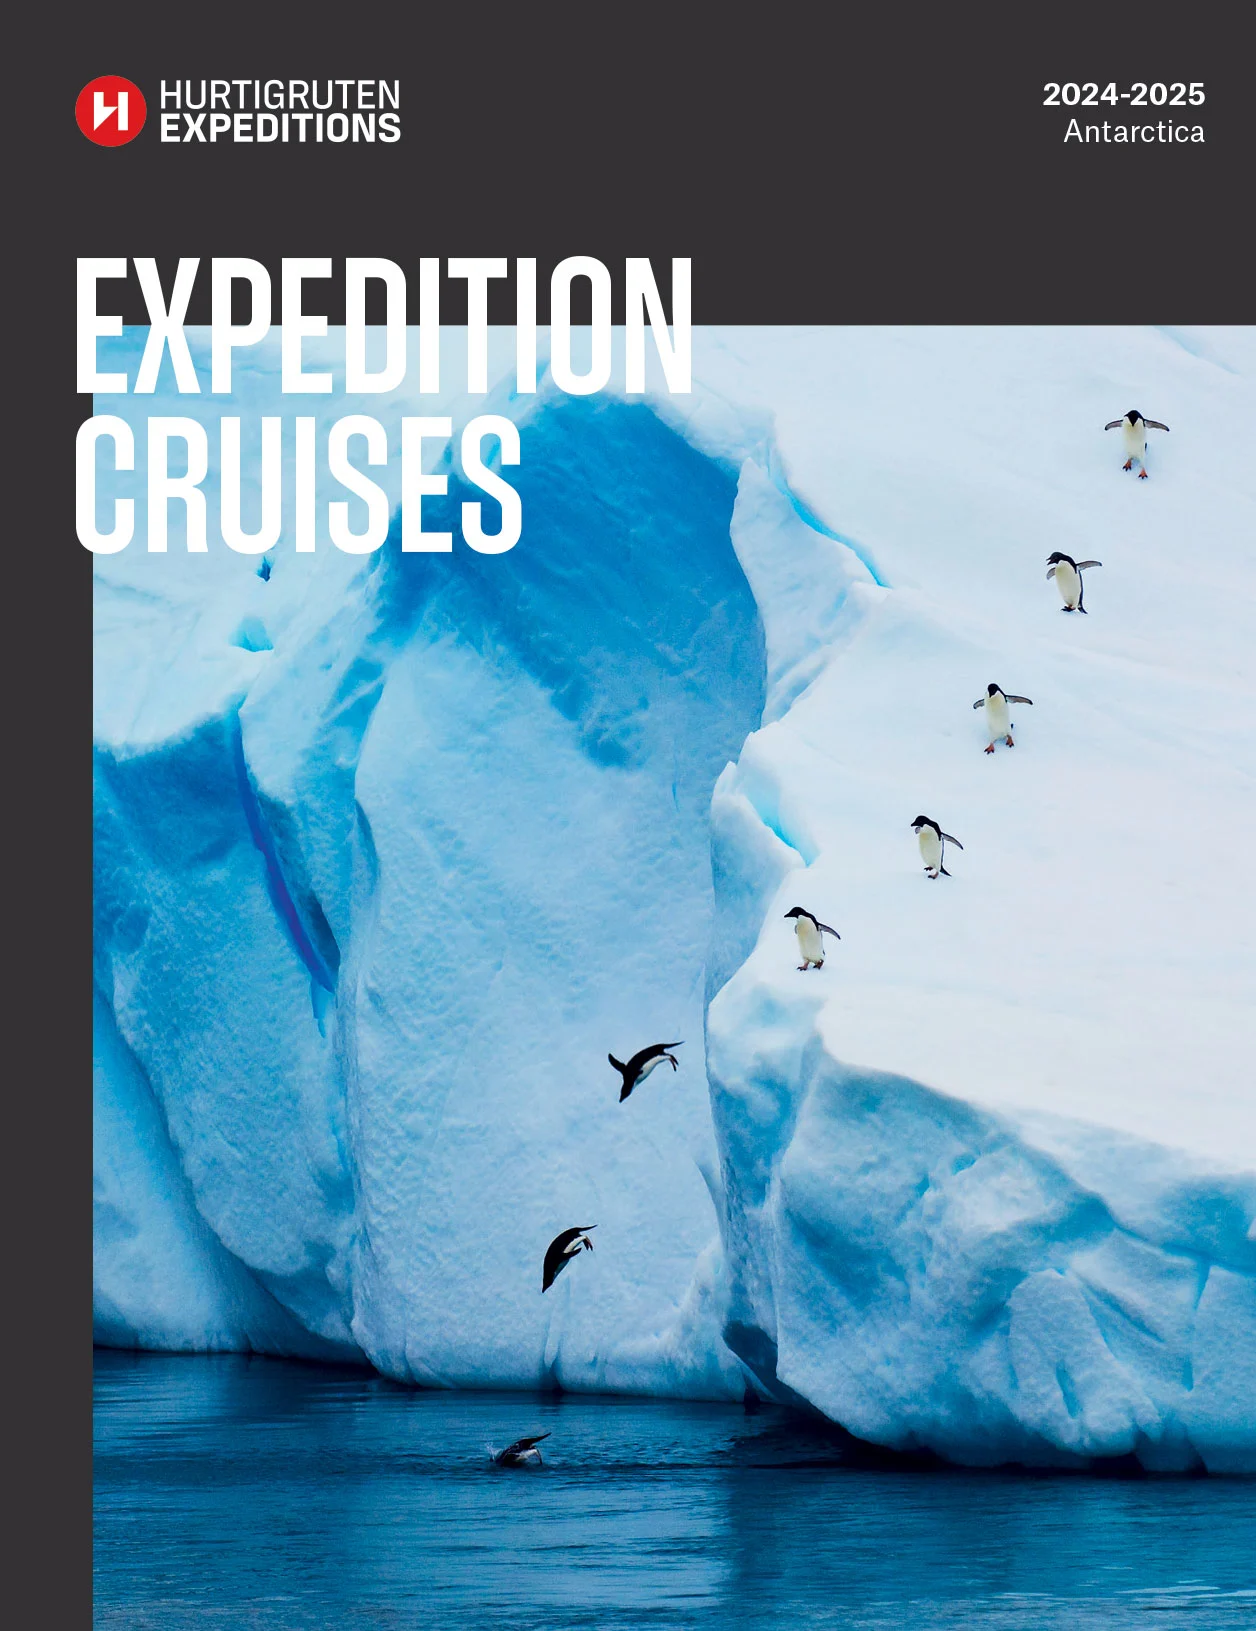 US Antarctica Brochure Cover 2024-2025